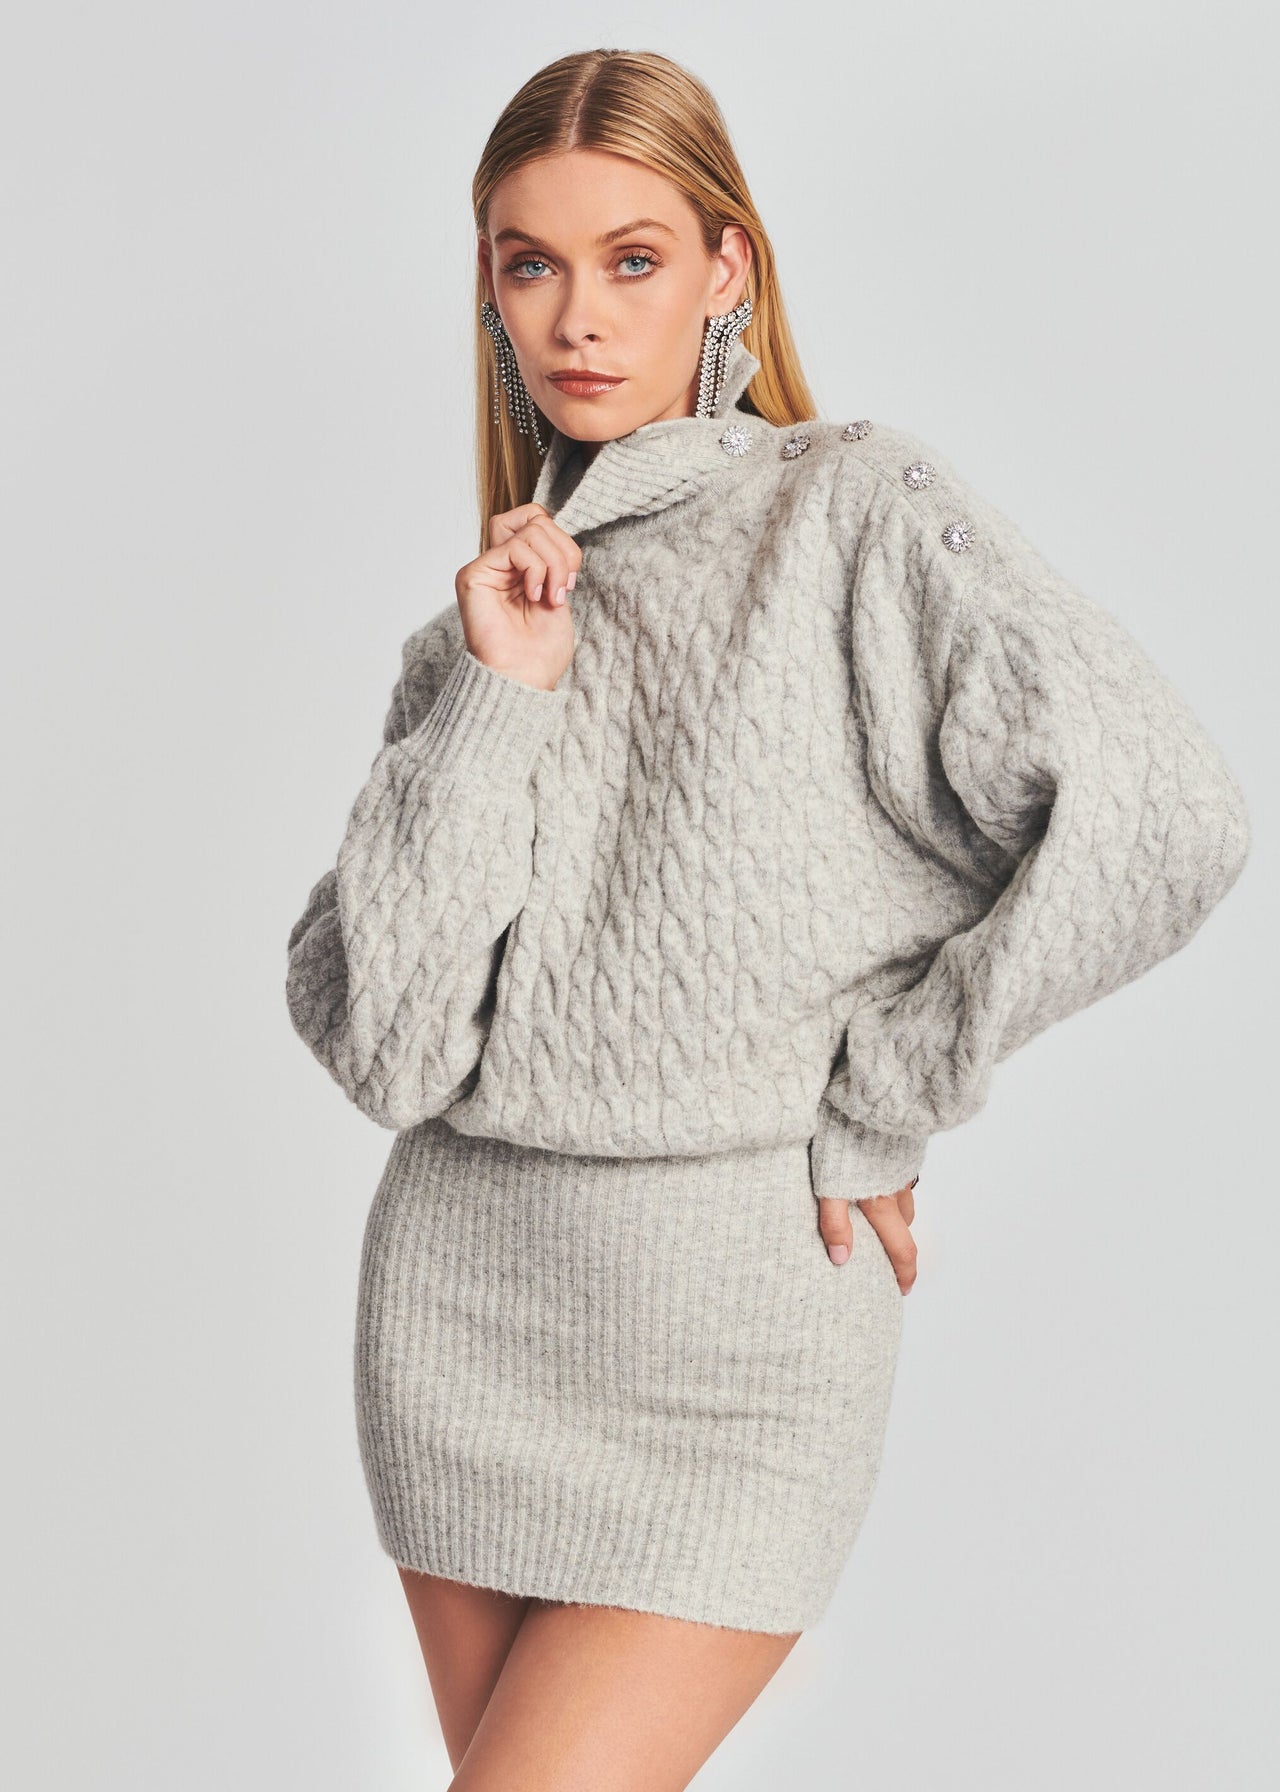 Waverly Sweater Dress